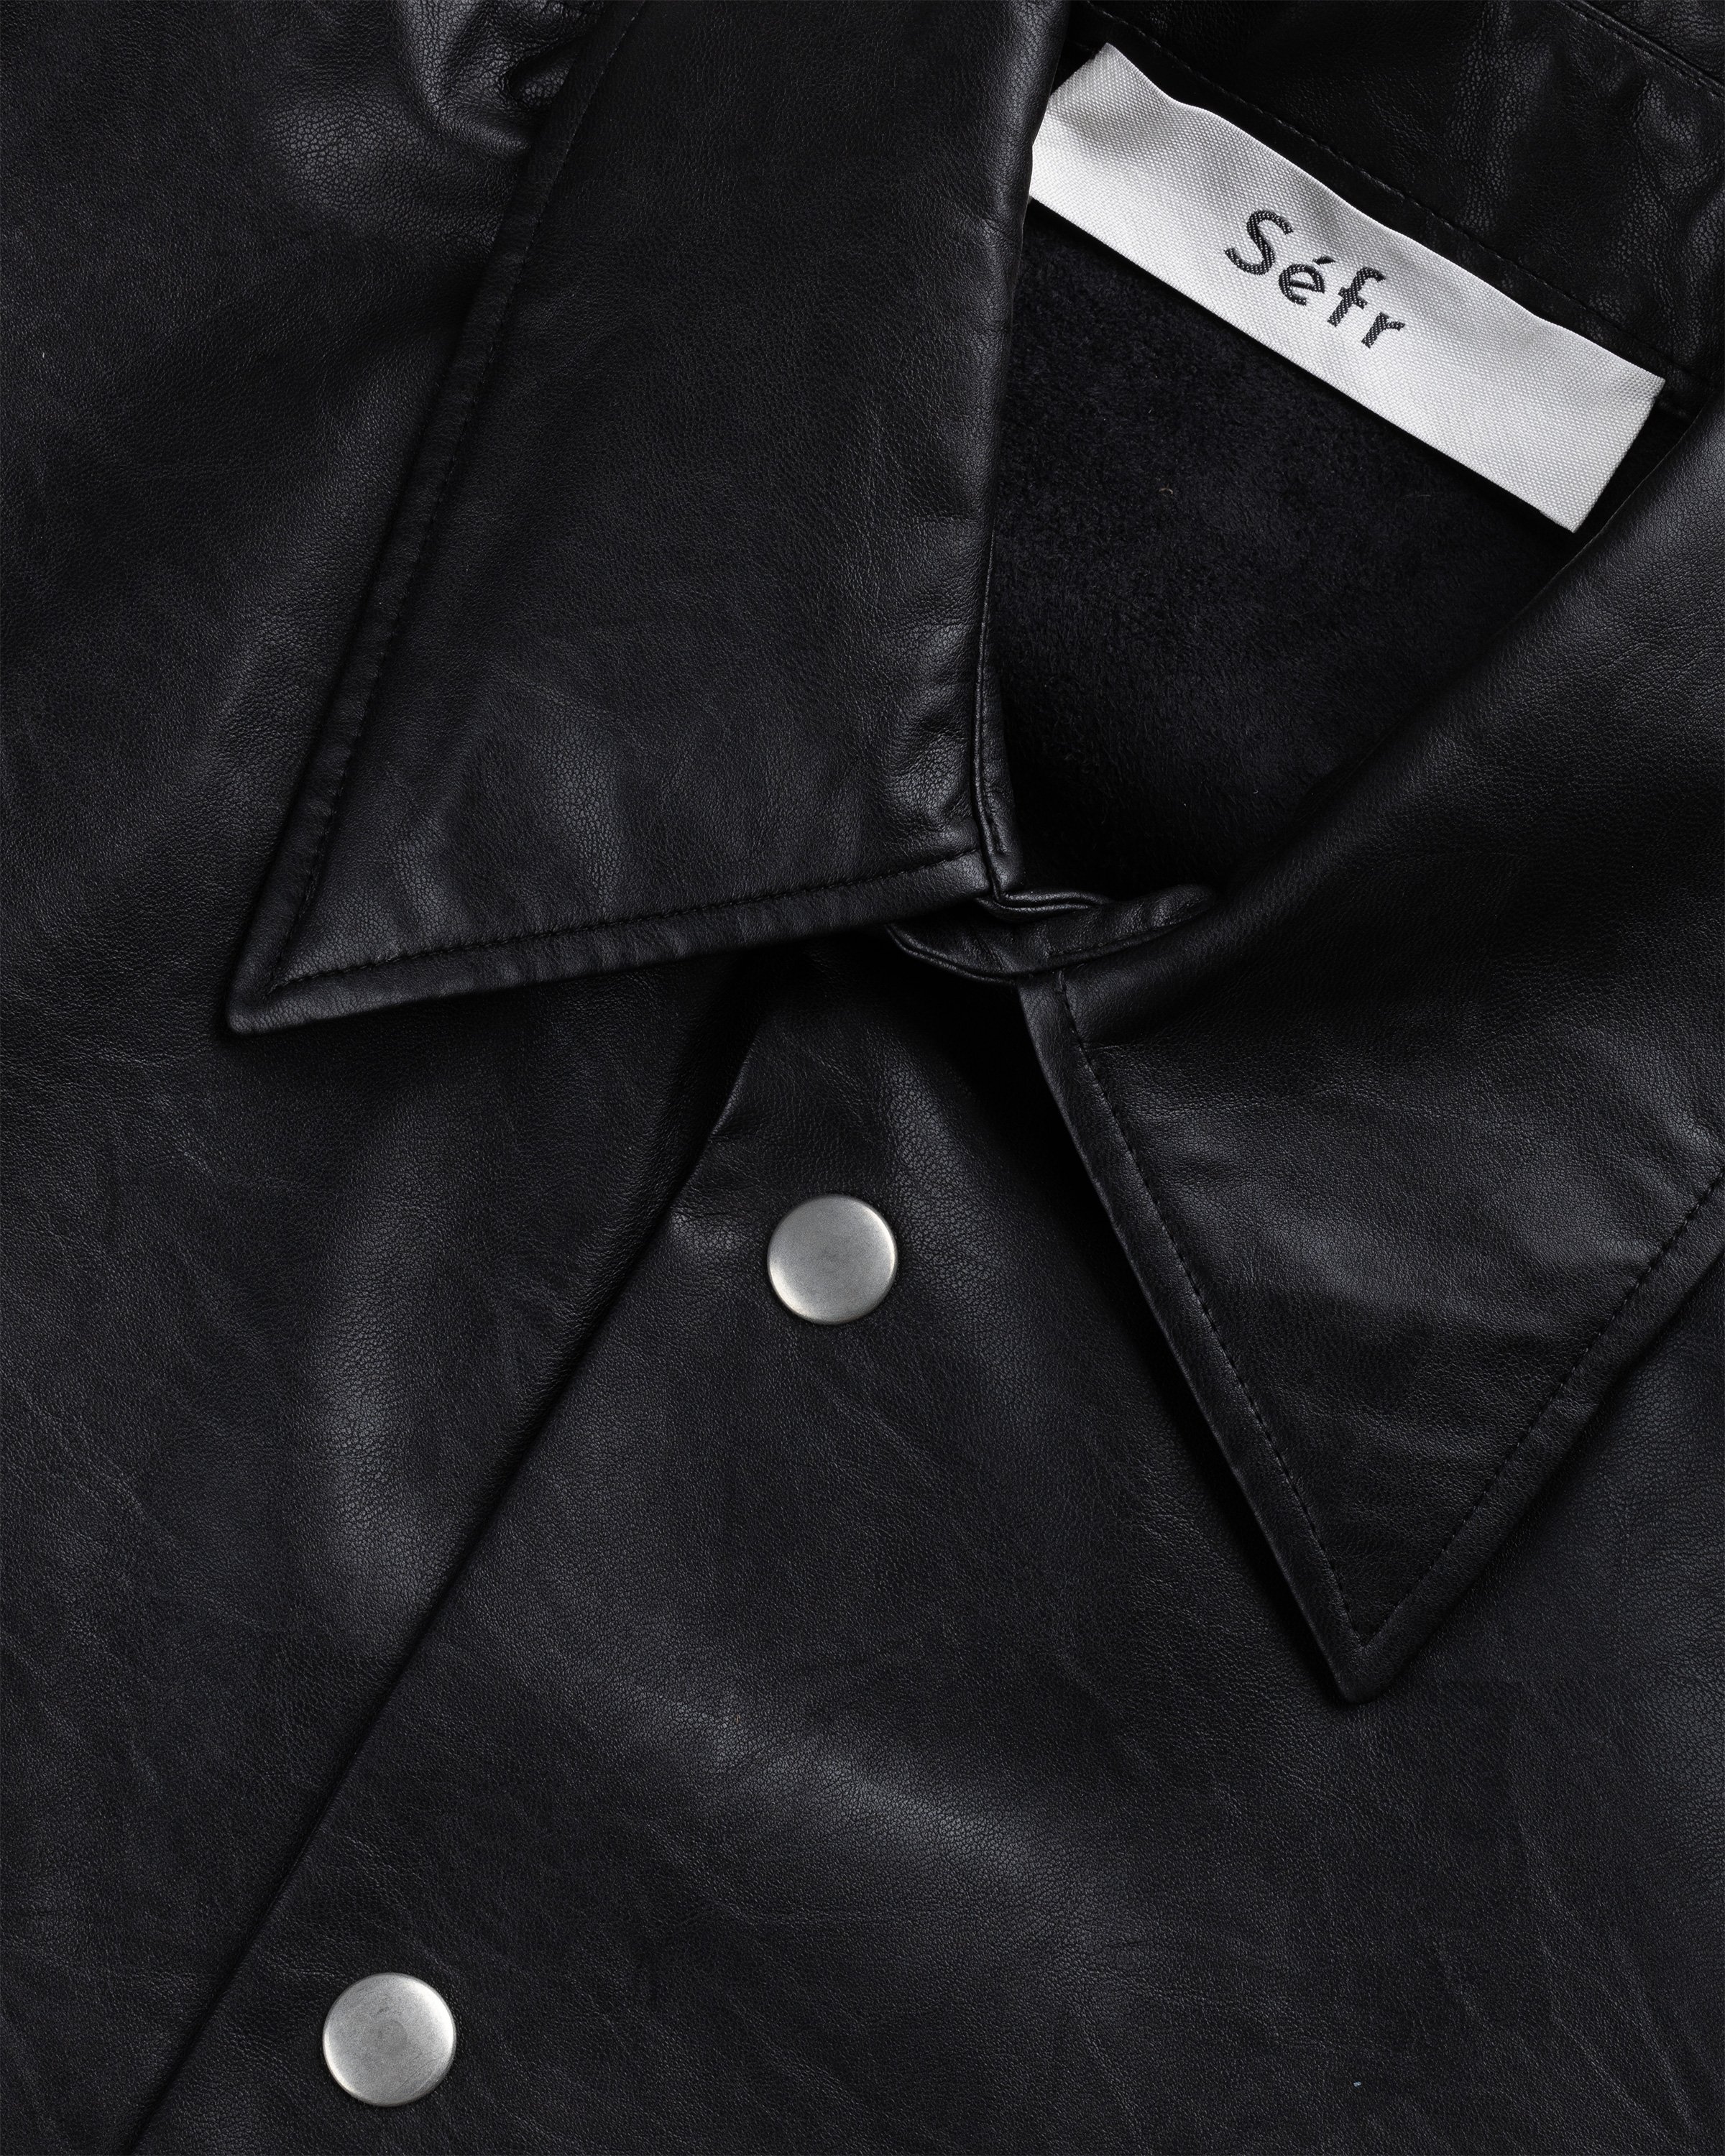 Séfr - Rainier Overshirt Space Black - Clothing - Black - Image 6